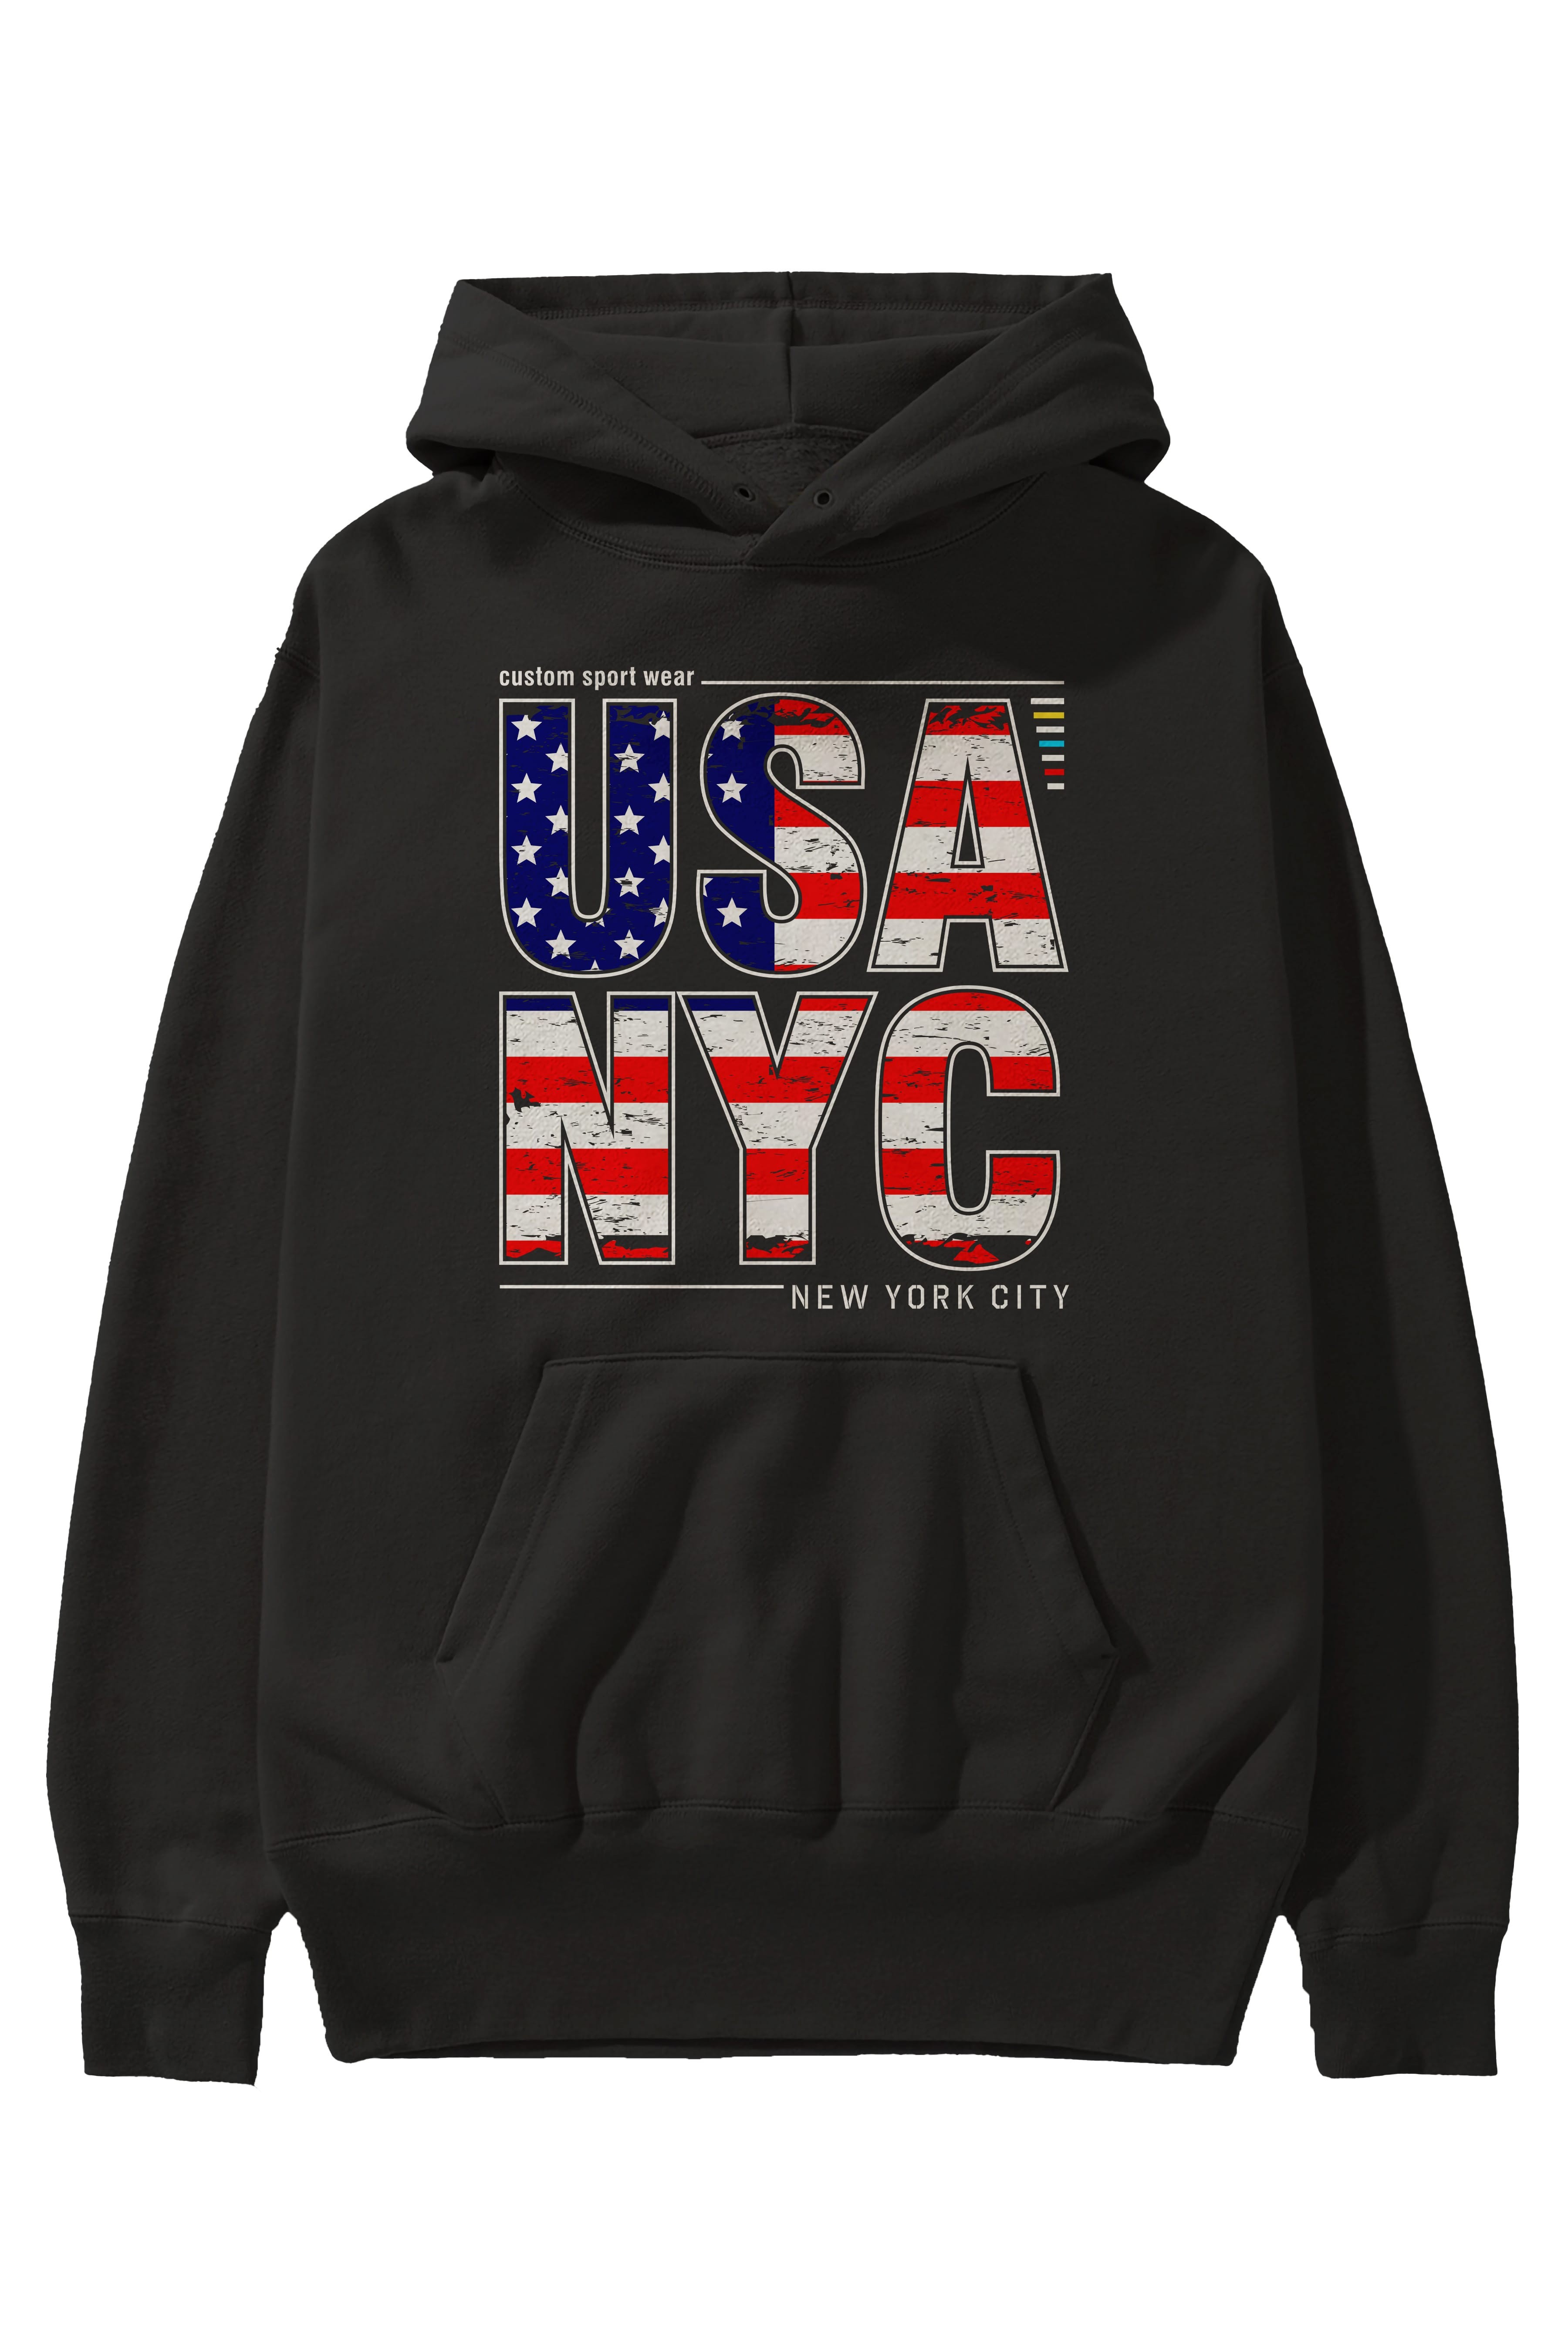 Usa NYC Ön Baskılı Oversize Hoodie Kapüşonlu Sweatshirt Erkek Kadın Unisex